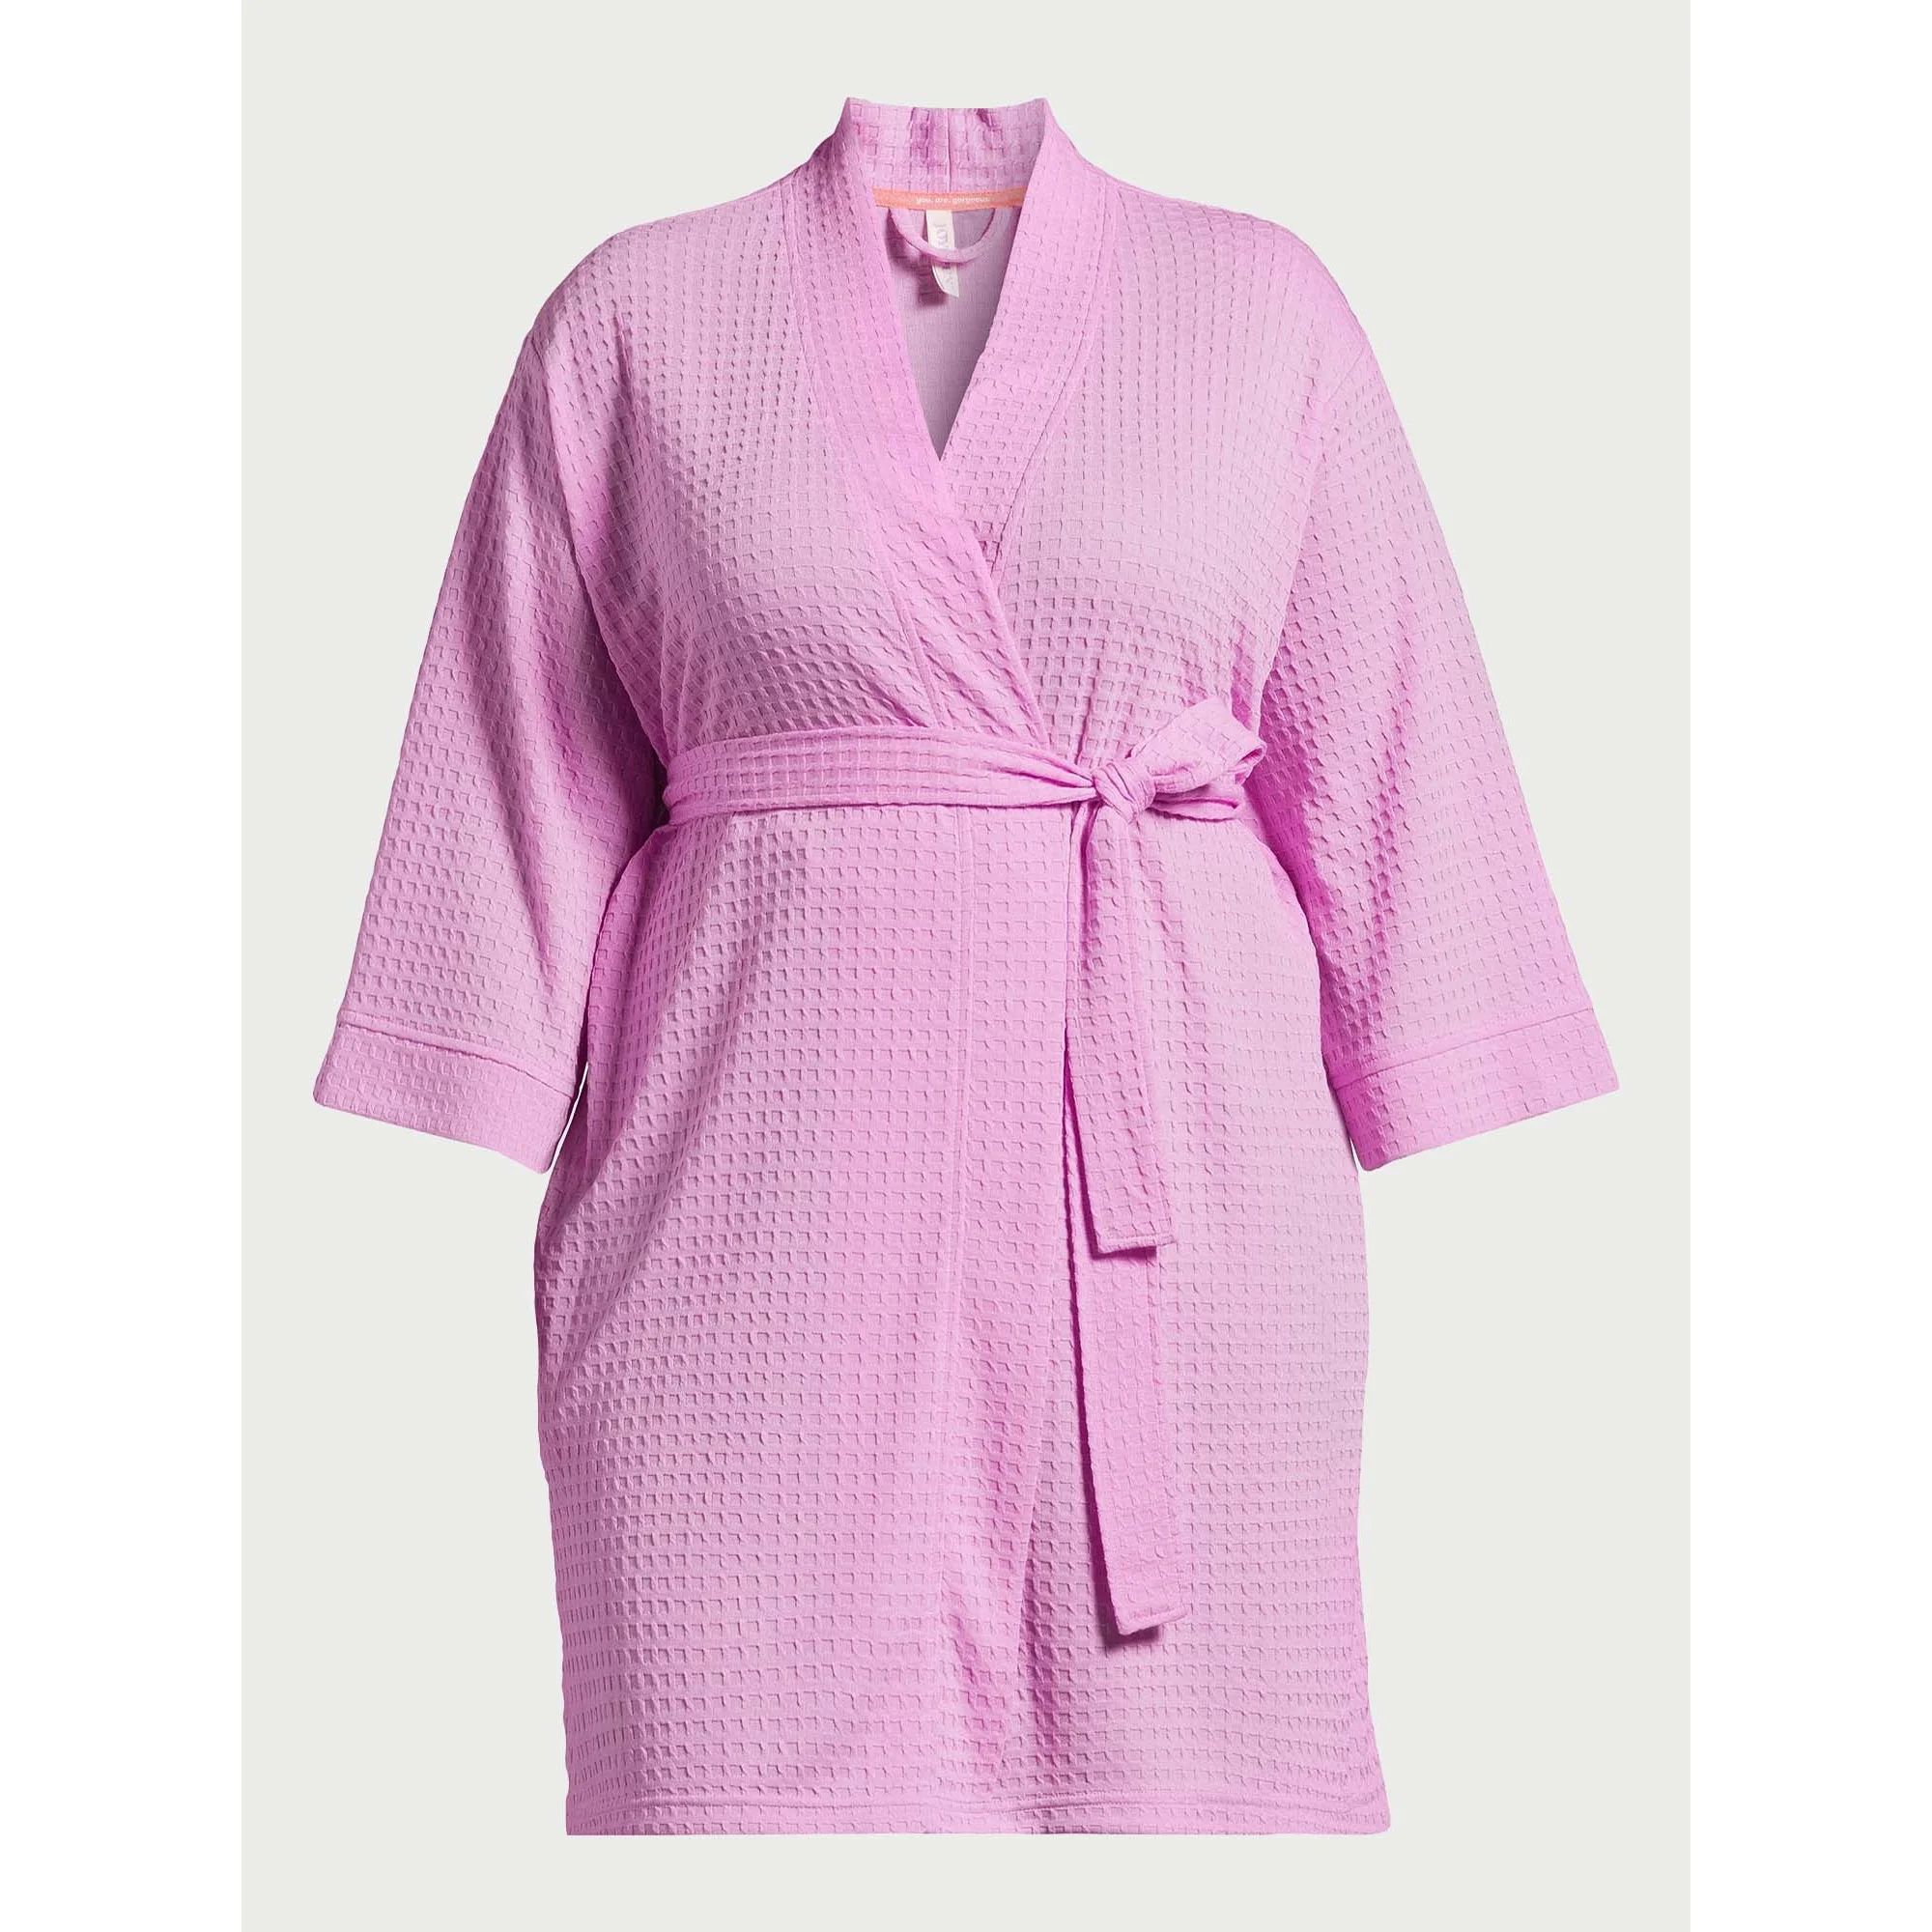 Joyspun Women’s Waffle Kimono Robe, Sizes S to 3X | Walmart (US)